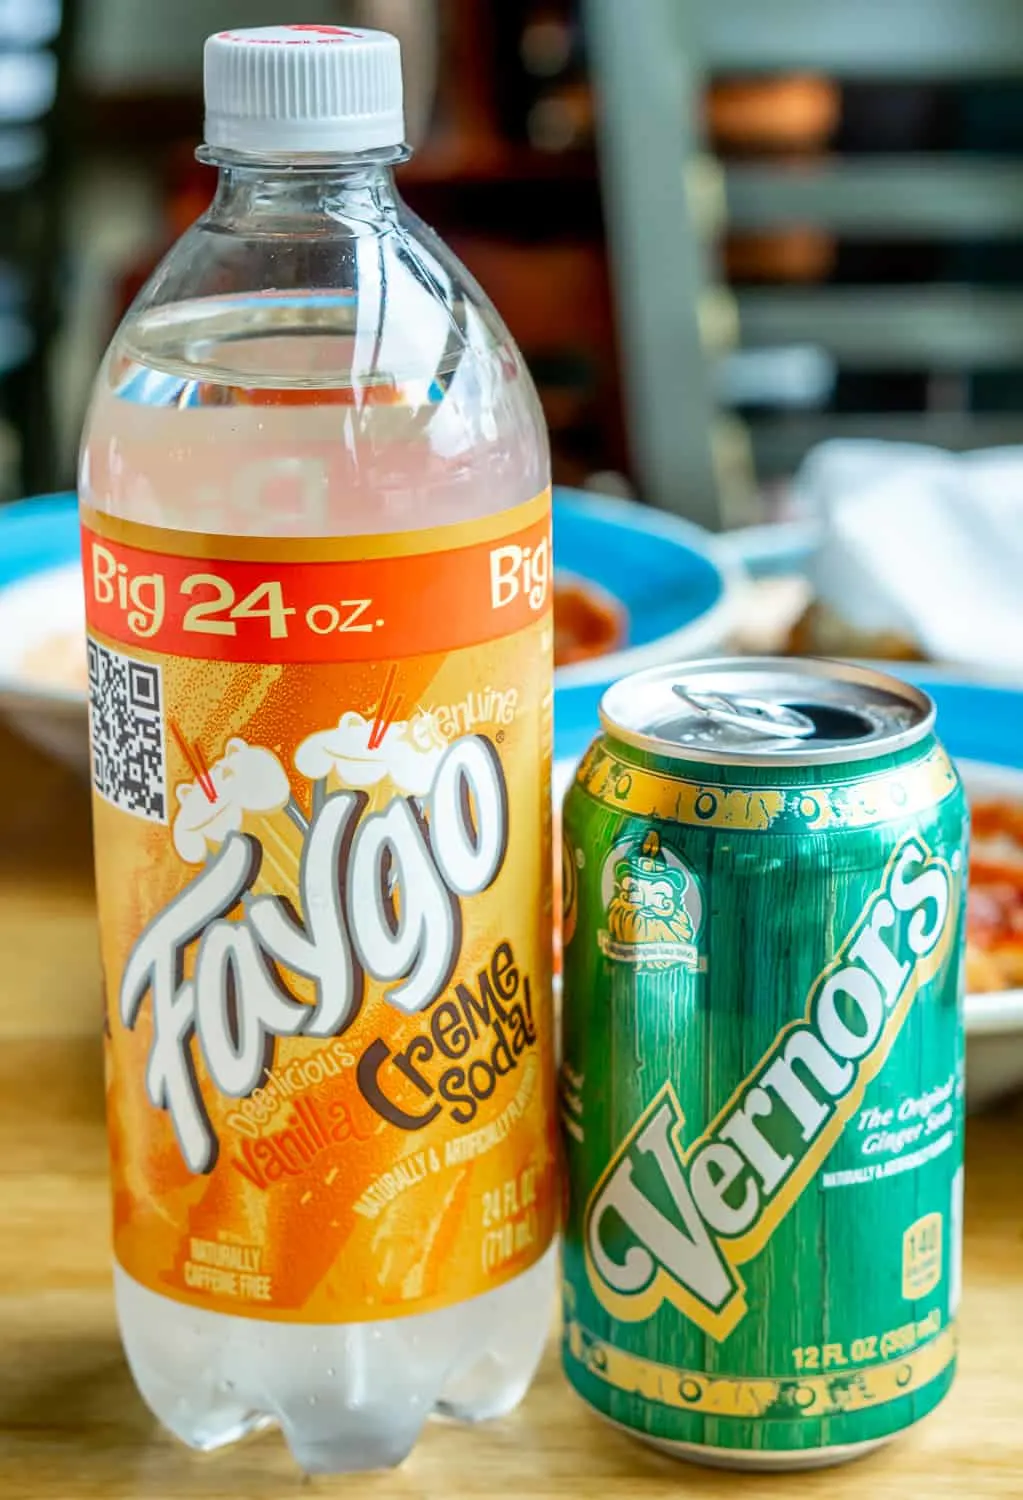 Faygo and Vernor's sodas